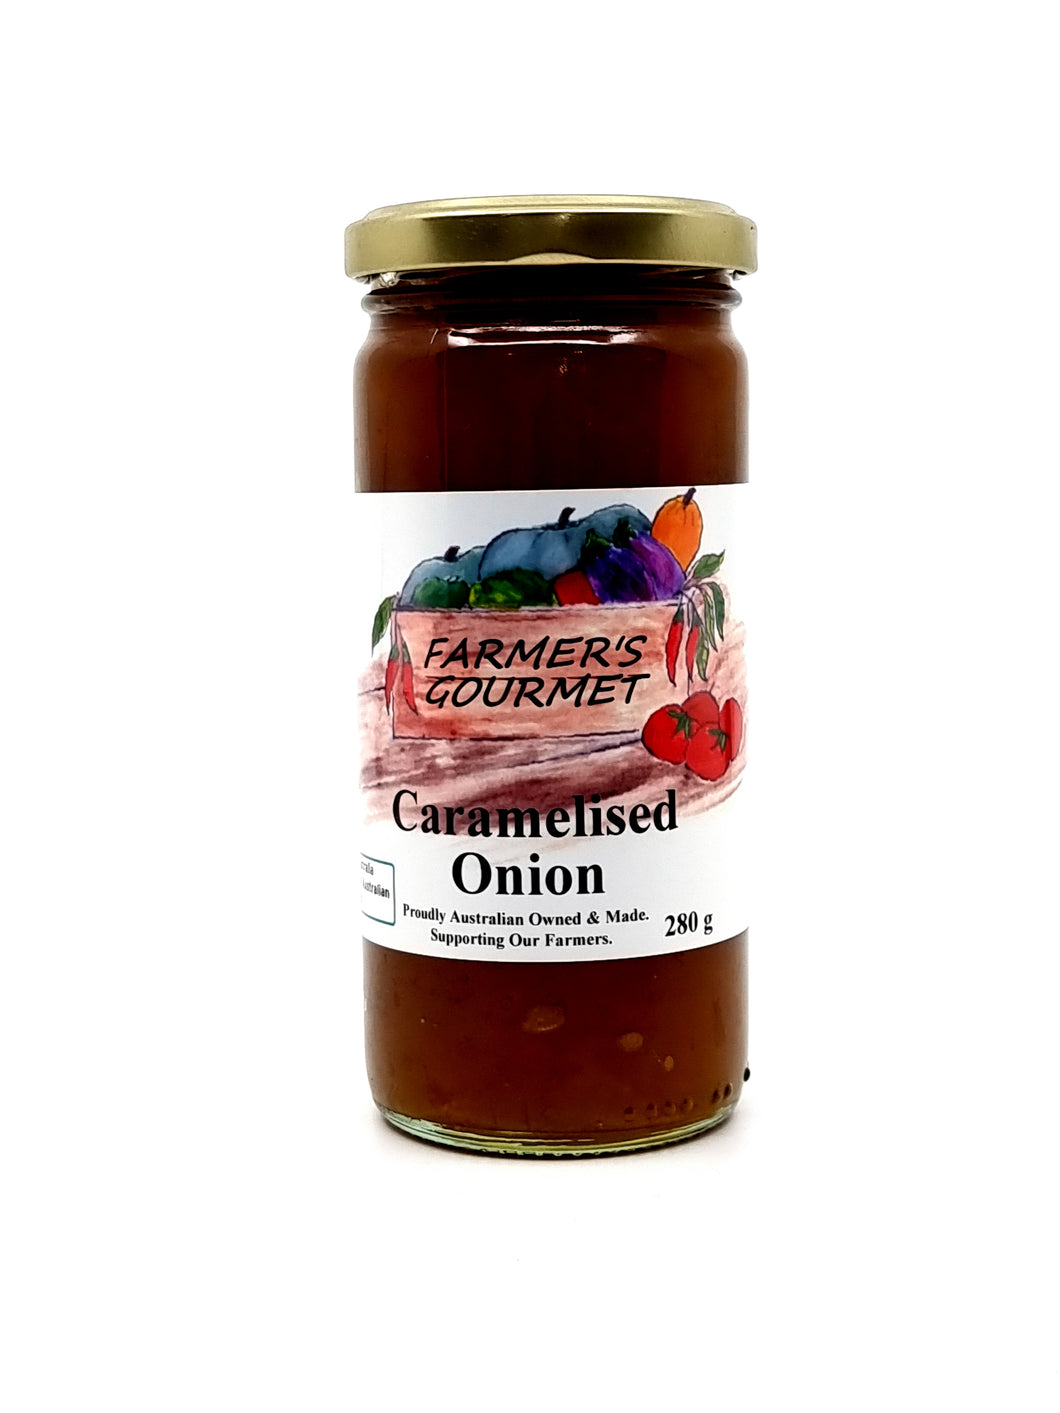 Farmers Gourmet Caramelised Onion 300g